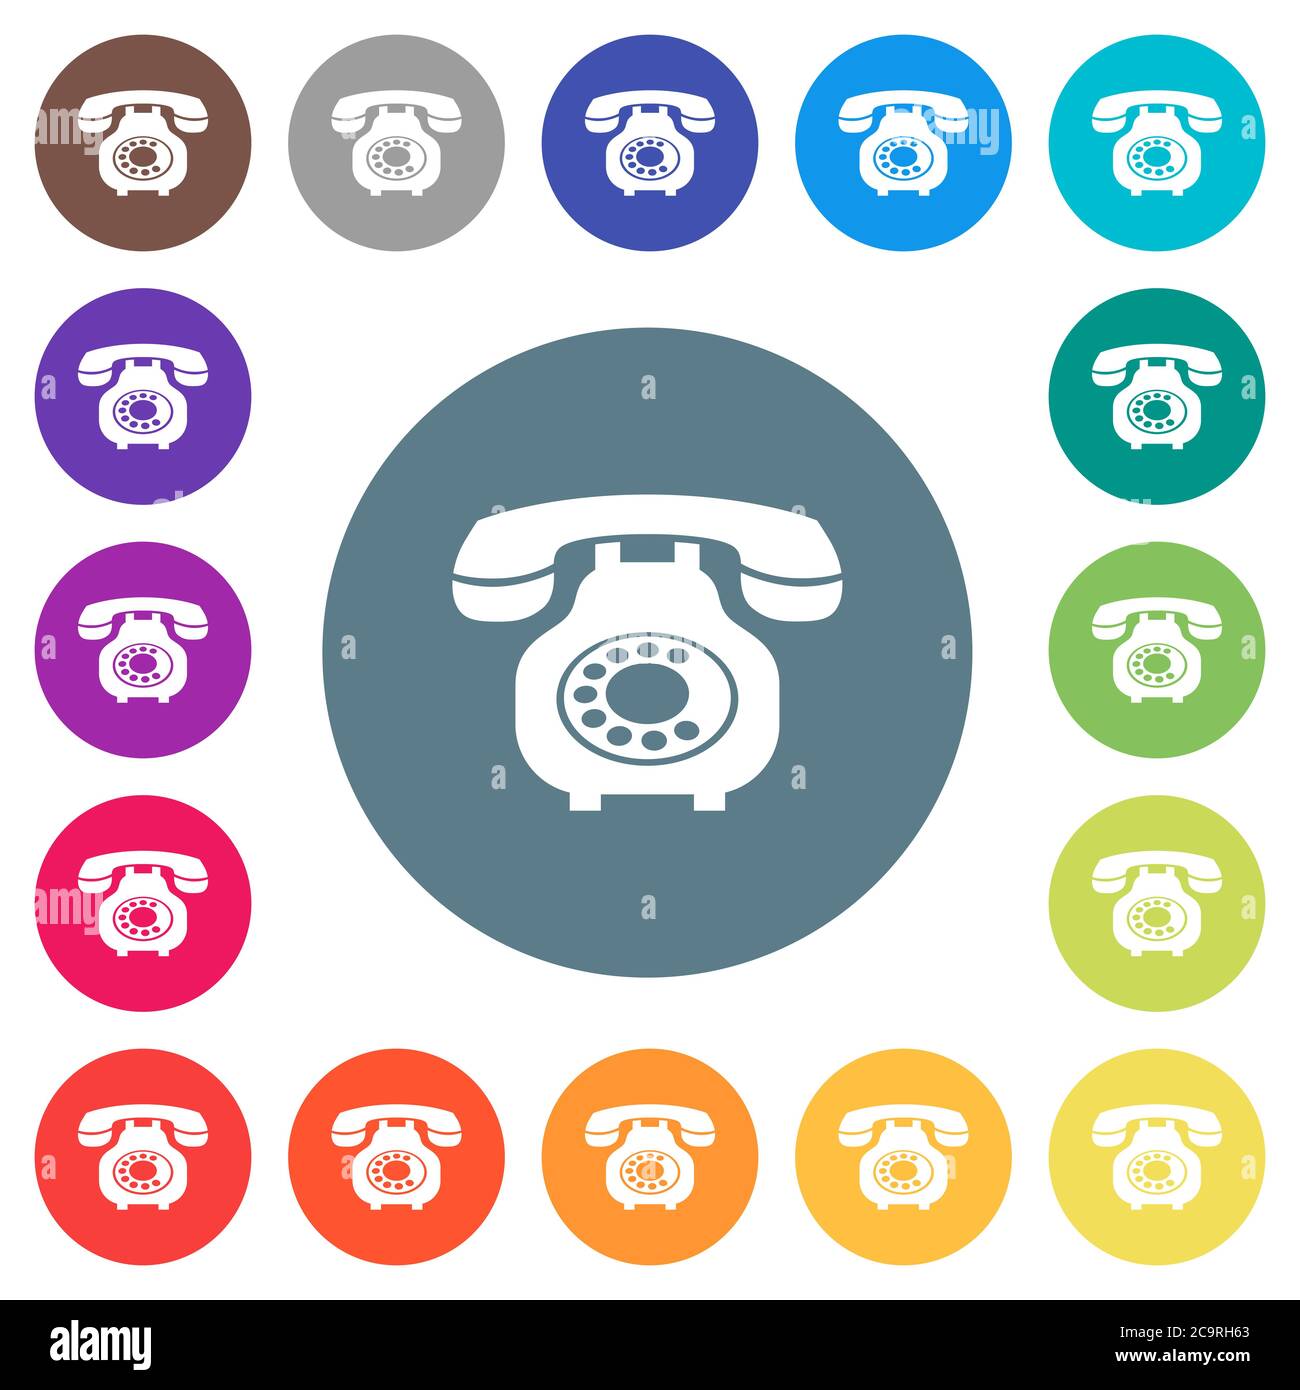 Vintage retro Telefon flache weiße Symbole auf runden Farbhintergründen. 17 Hintergrundfarbvarianten sind enthalten. Stock Vektor